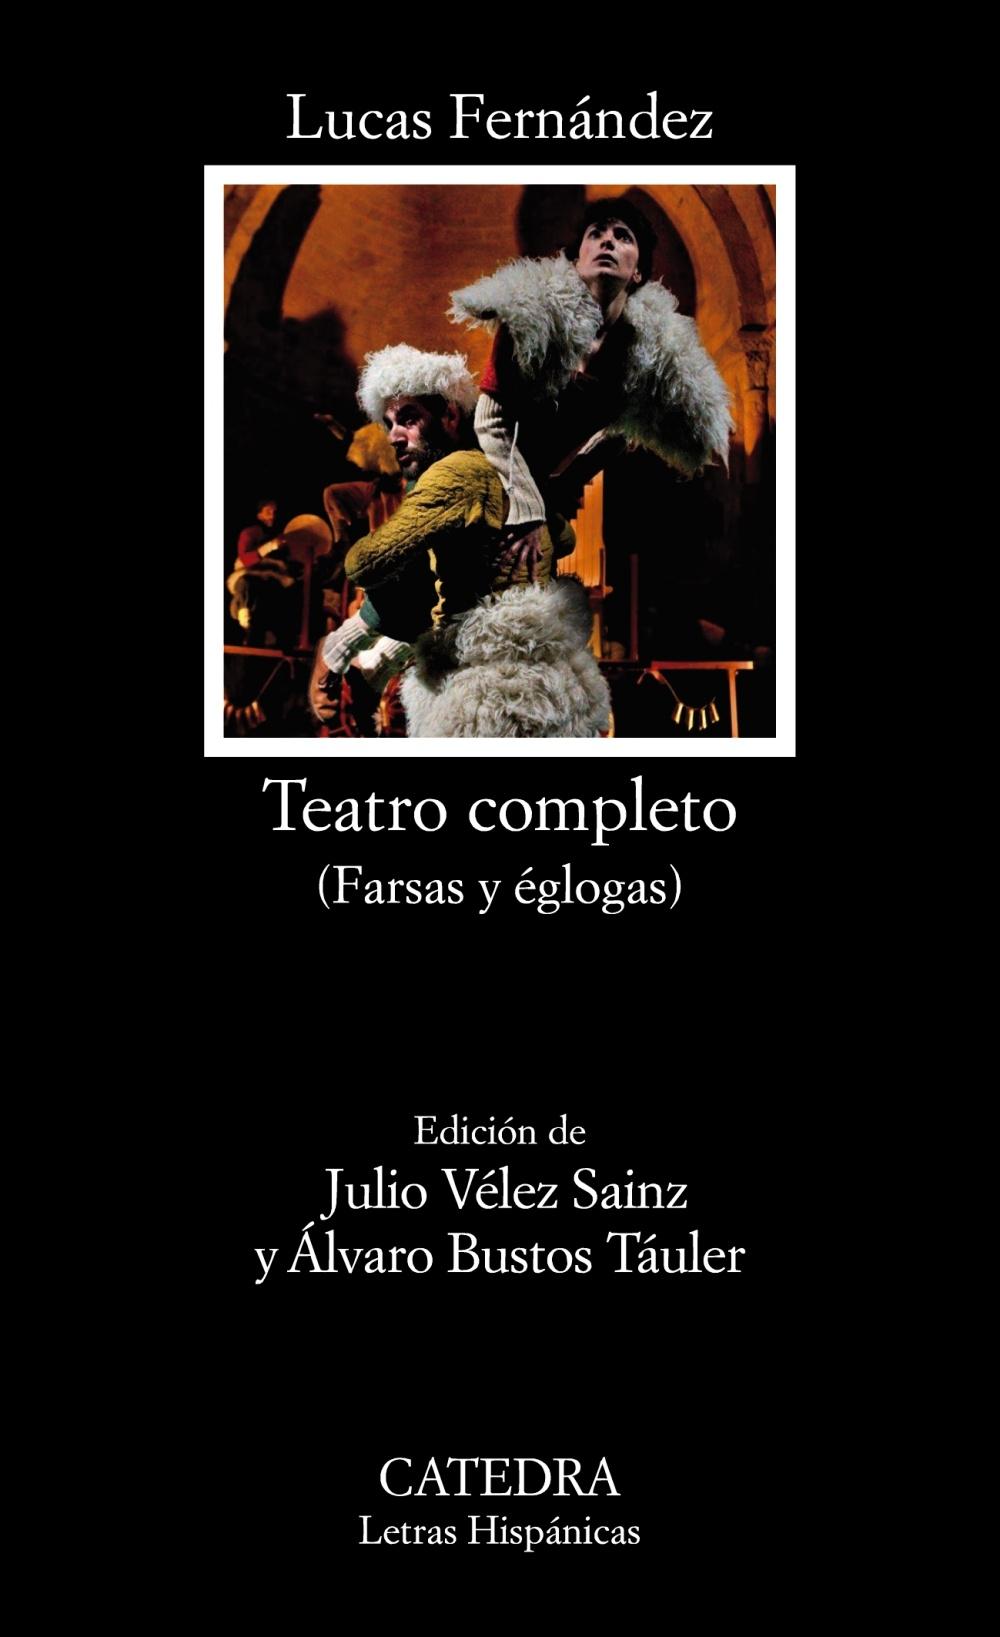 Teatro completo "(Farsas y églogas al modo y estilo pastoril y castellano)". 